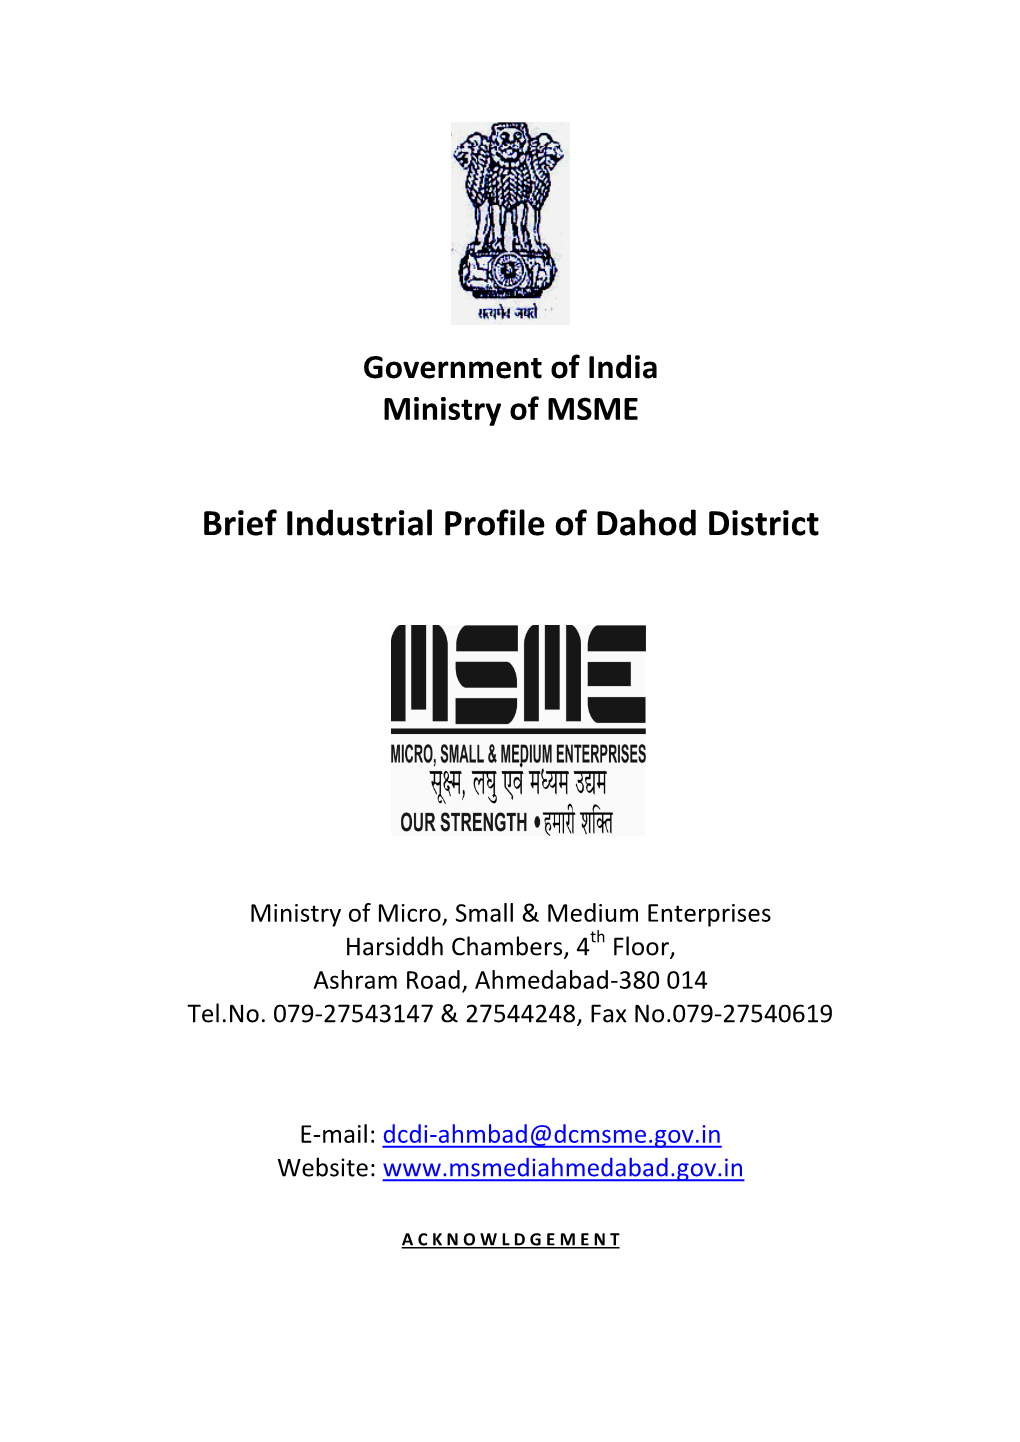 Brief Industrial Profile of Dahod District